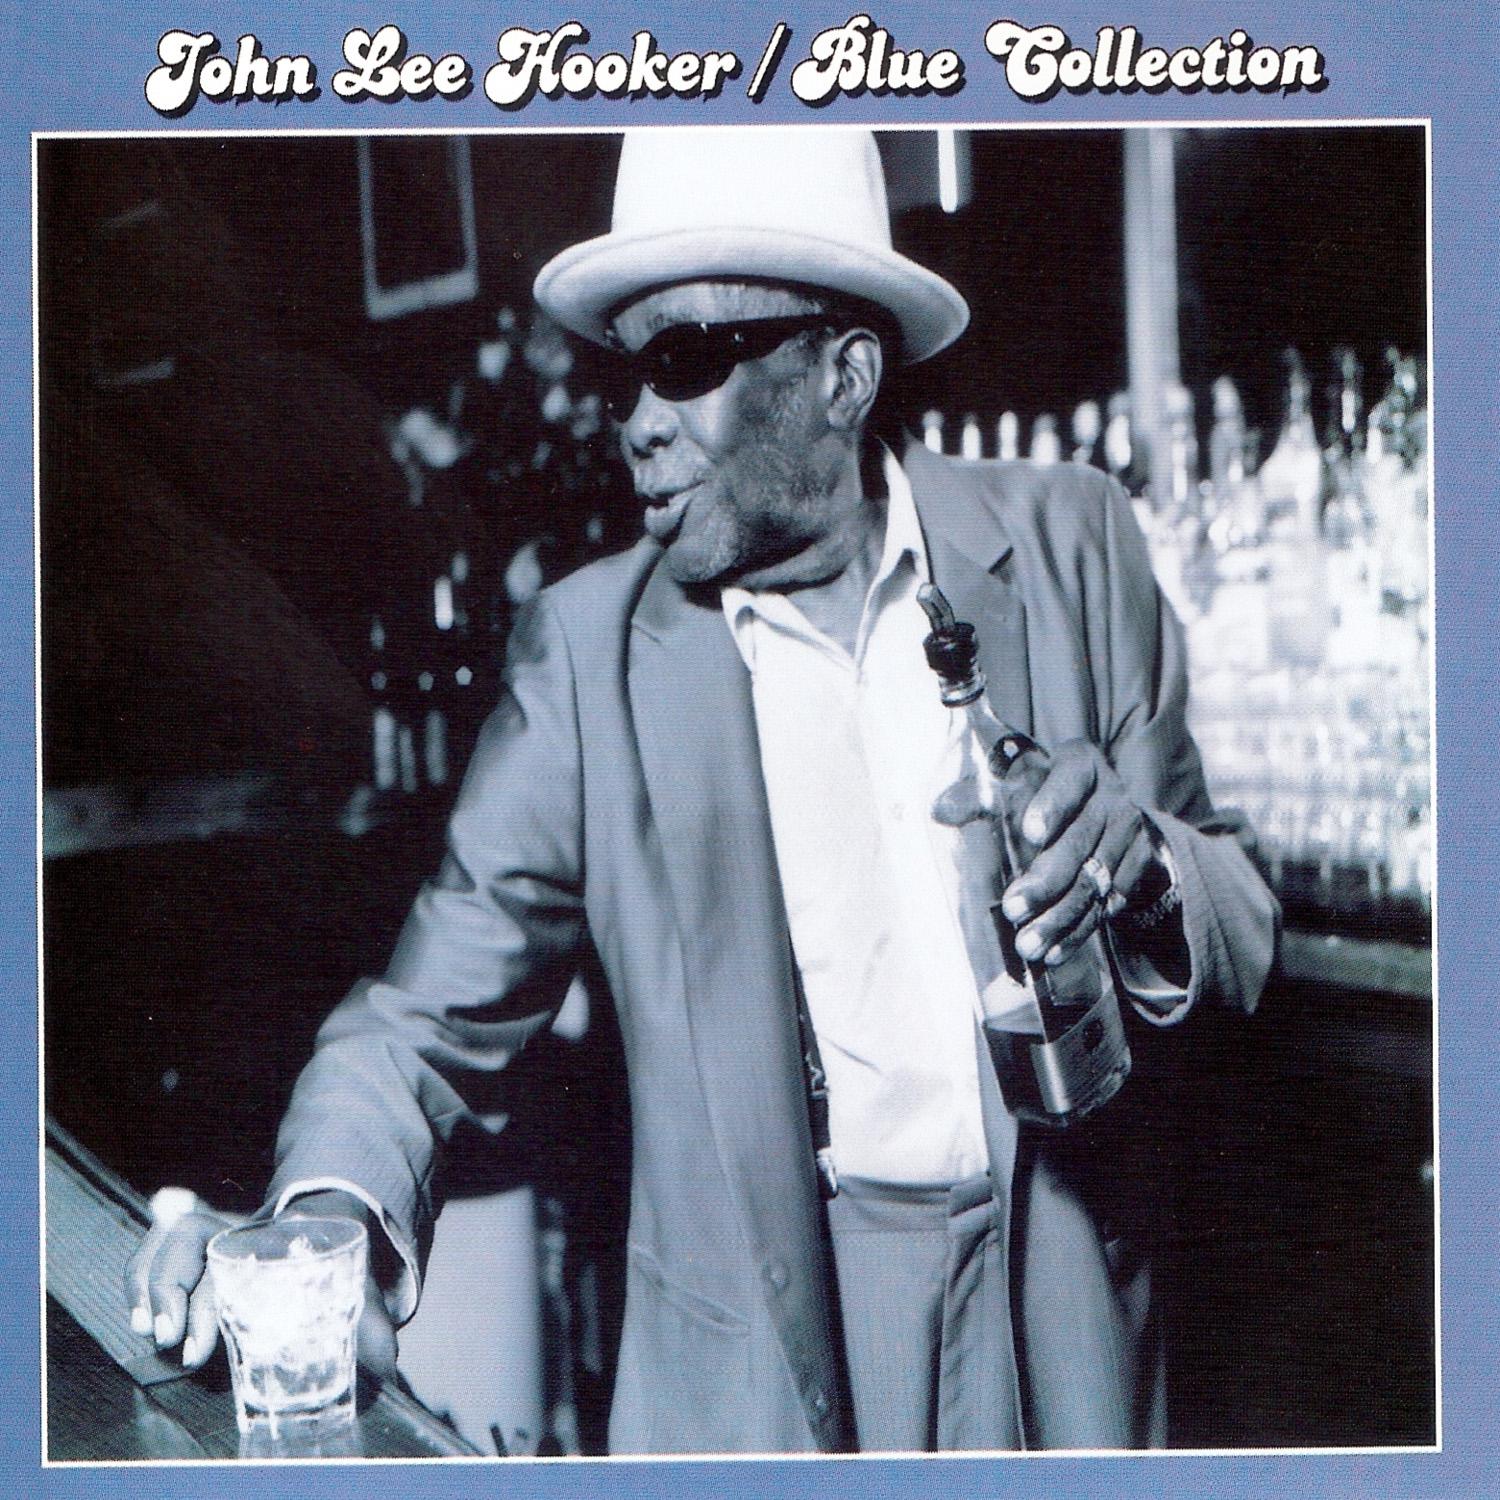 Blue Collection: John Lee Hooker